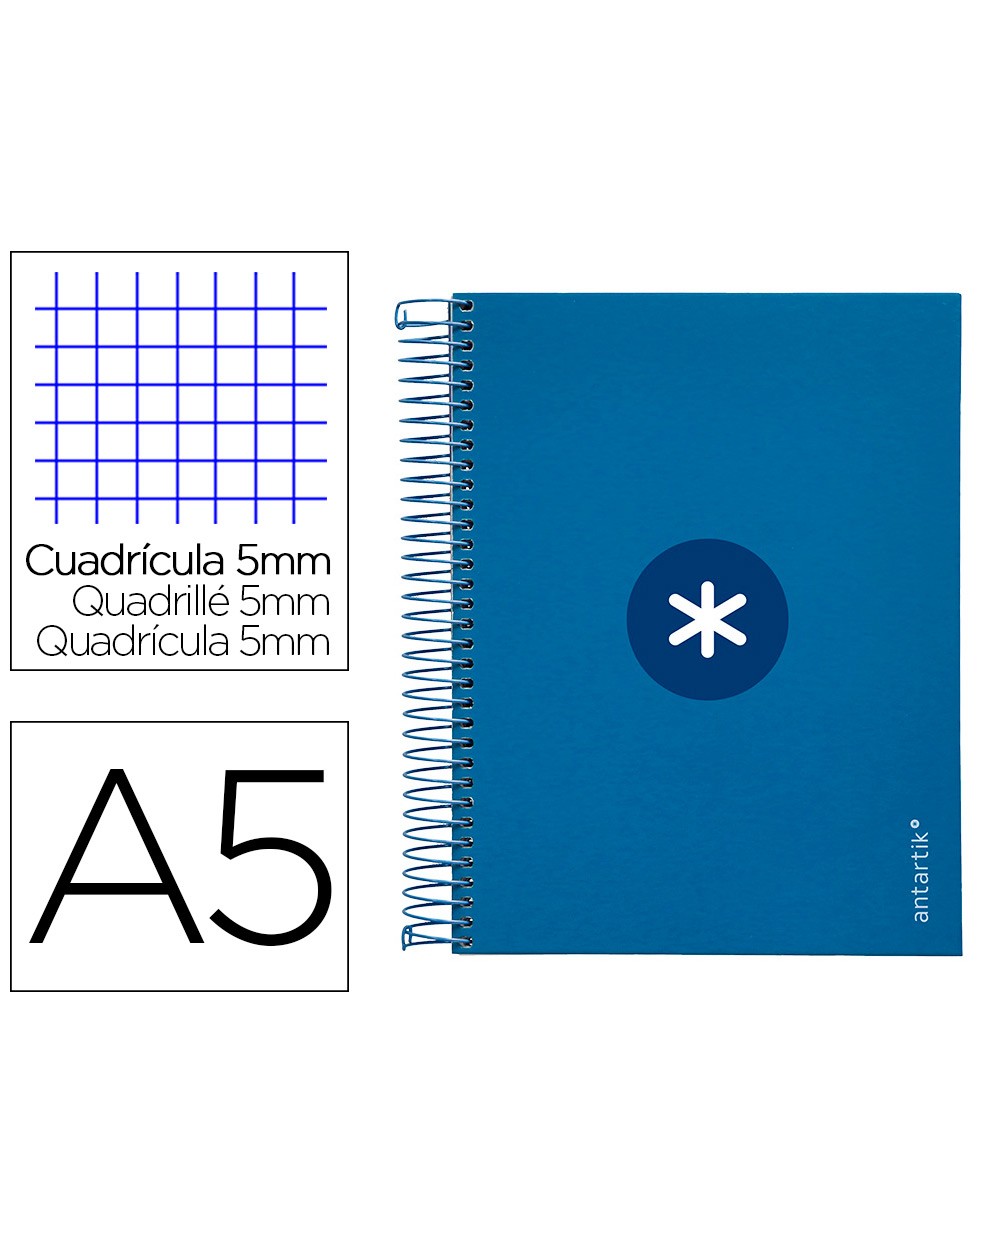 Cuaderno espiral liderpapel a5 micro antartik tapa forrada120h 100 gr cuadro 5mm 5 banda6 taladros color azul oscuro